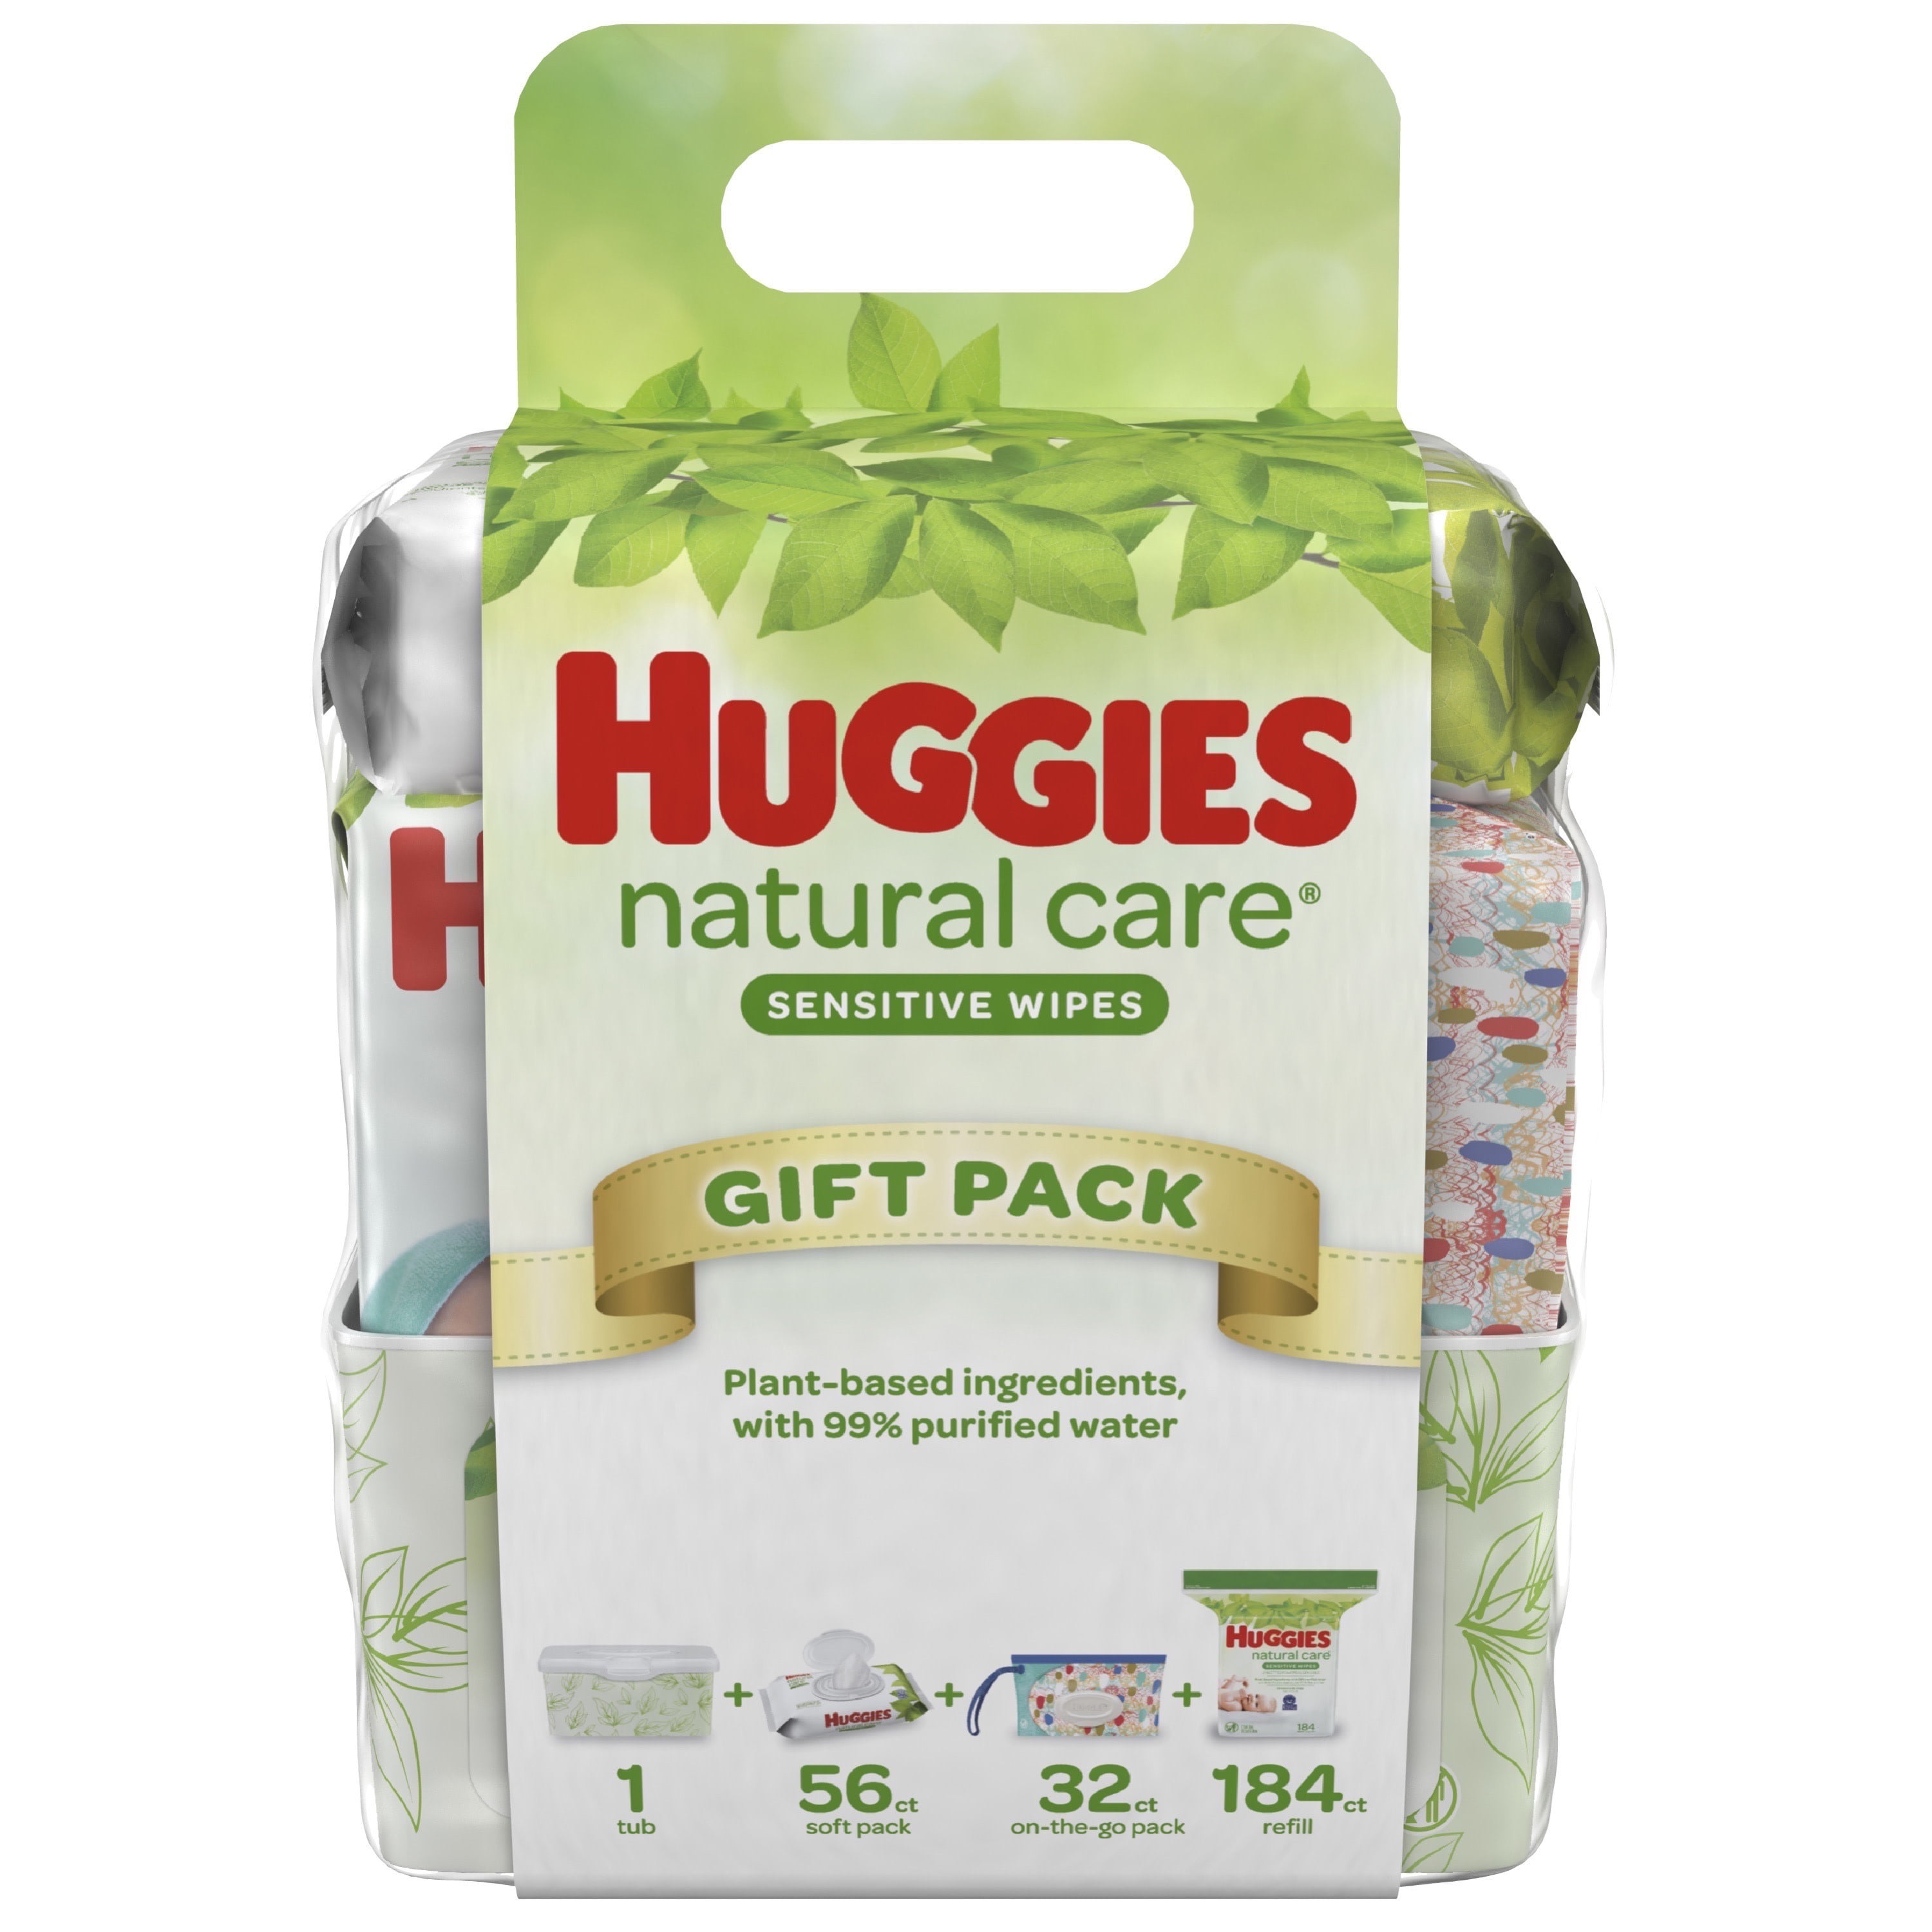 huggies natural care walmart